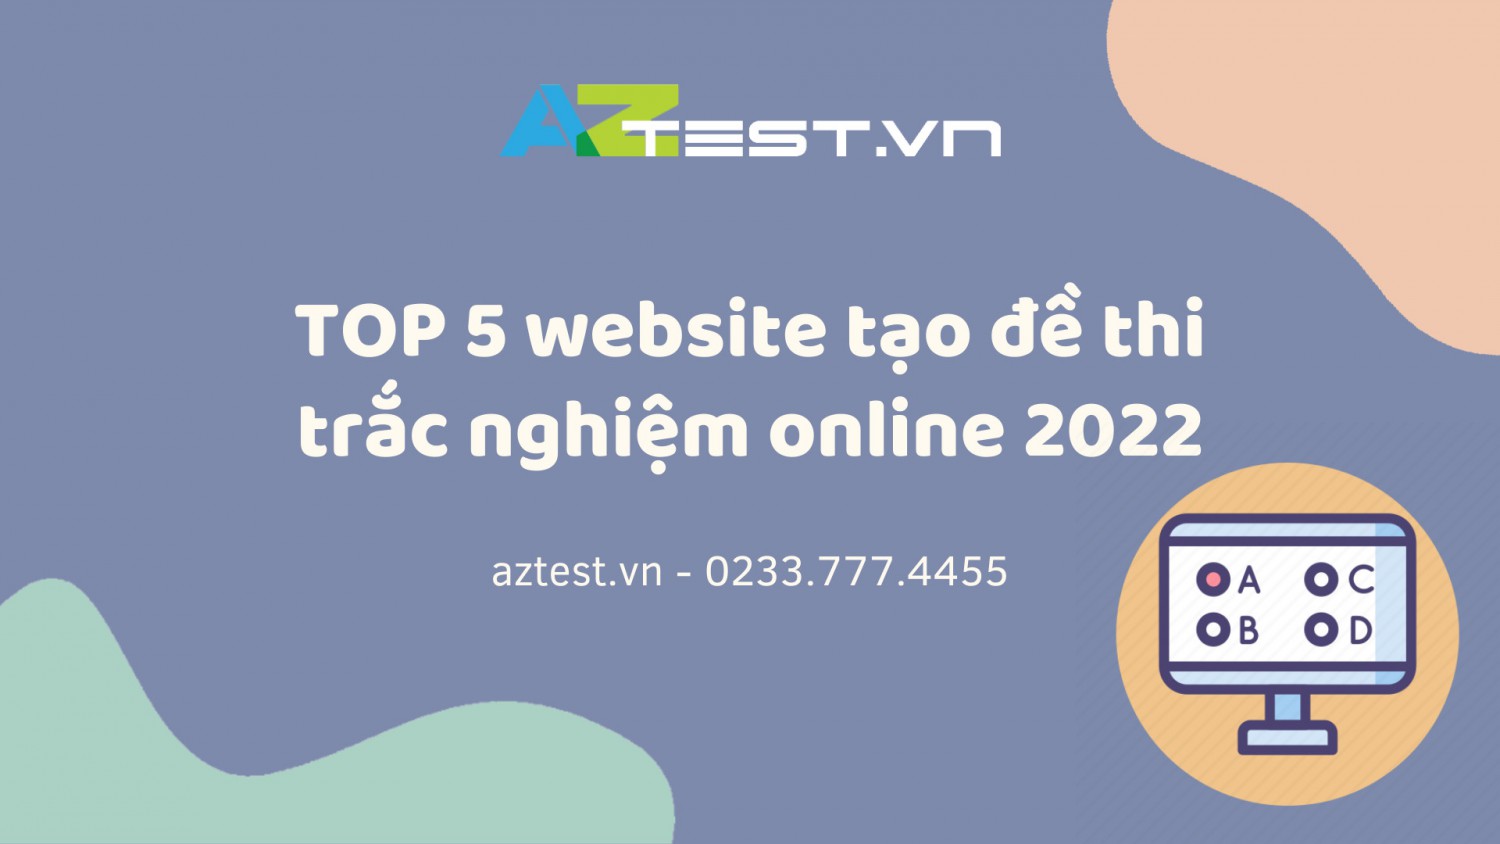 TOP 5 website tạo đề thi trắc nghiệm online 2022